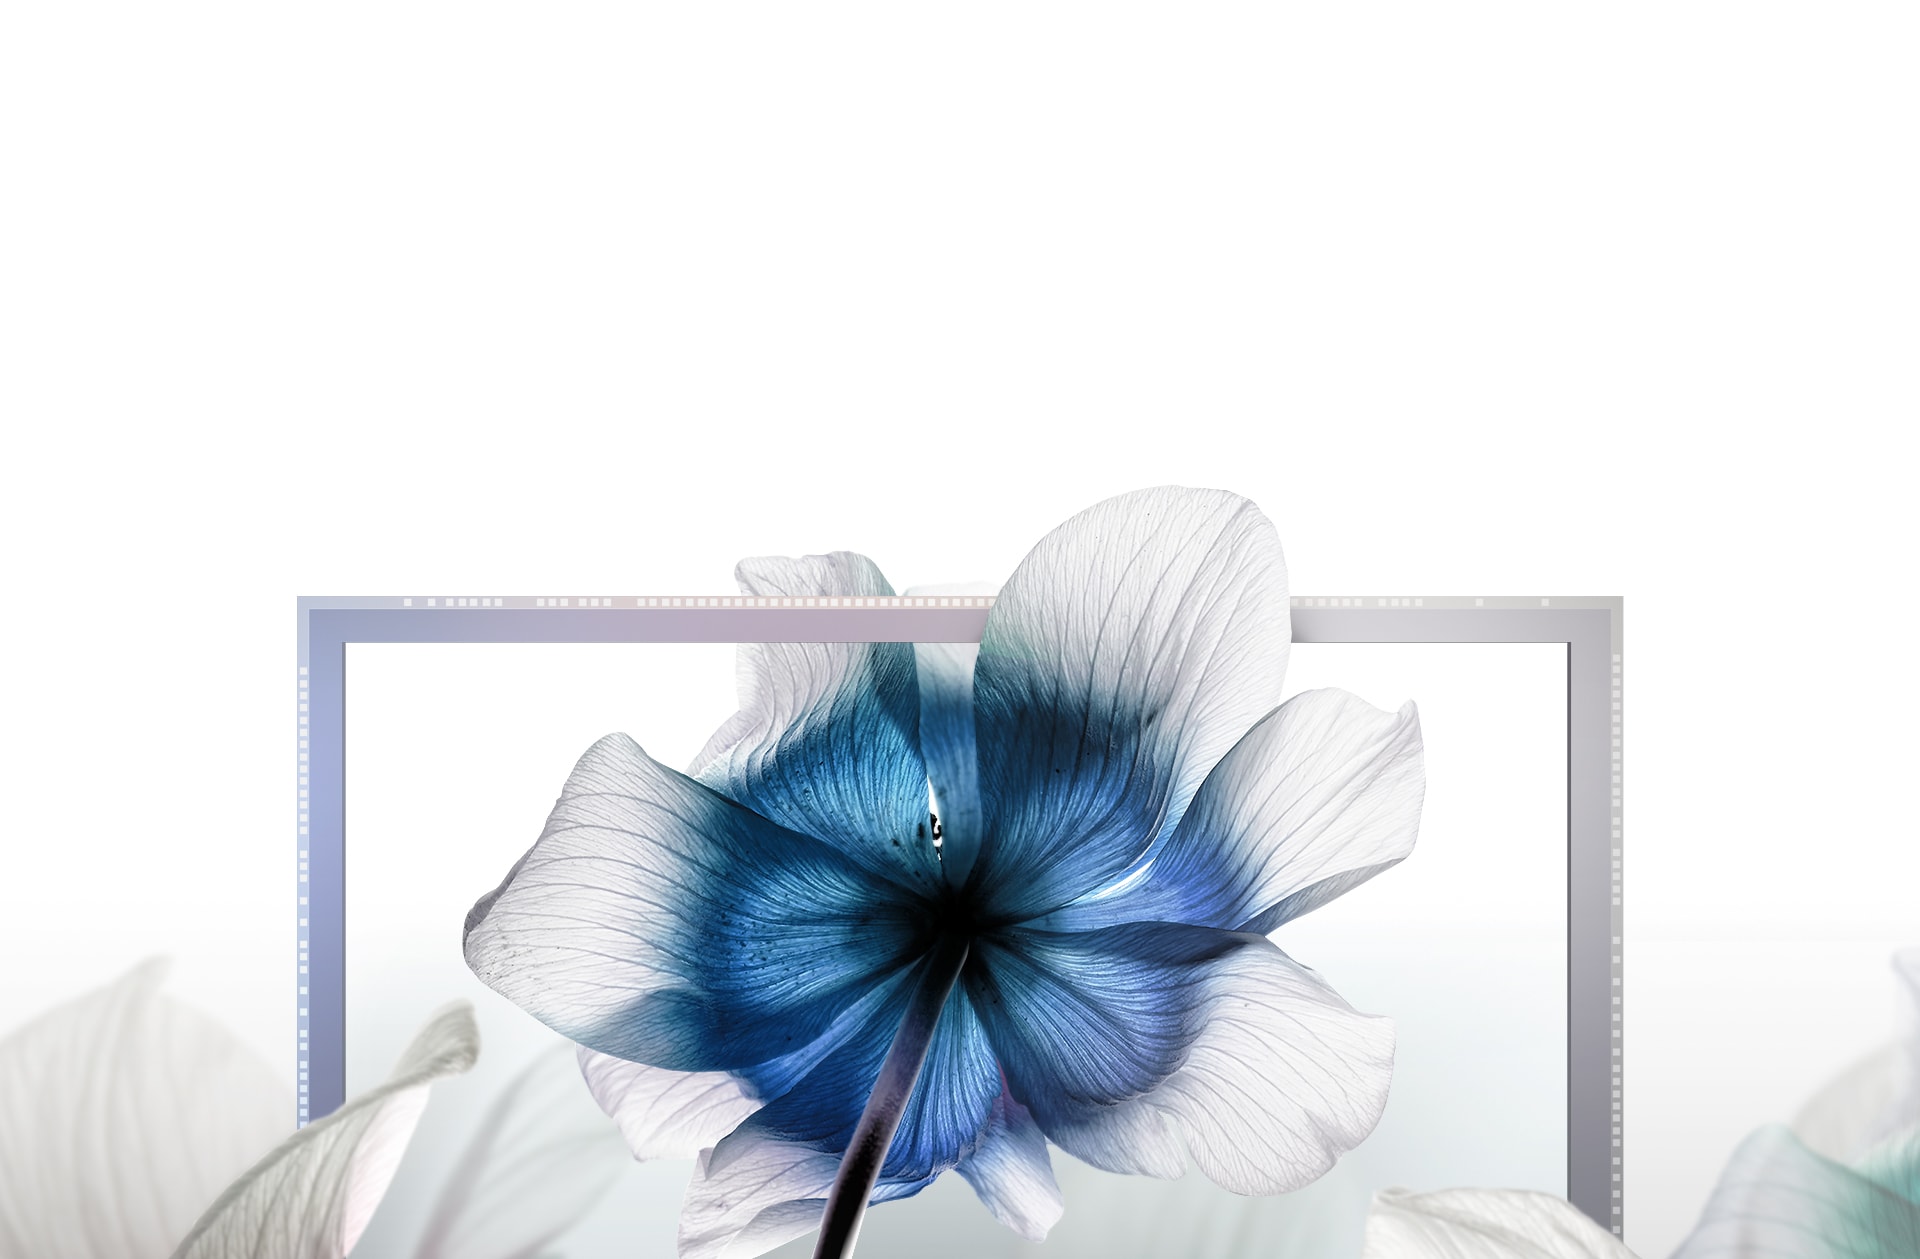 花の上にISOCELL HP1を置いたイメージ。